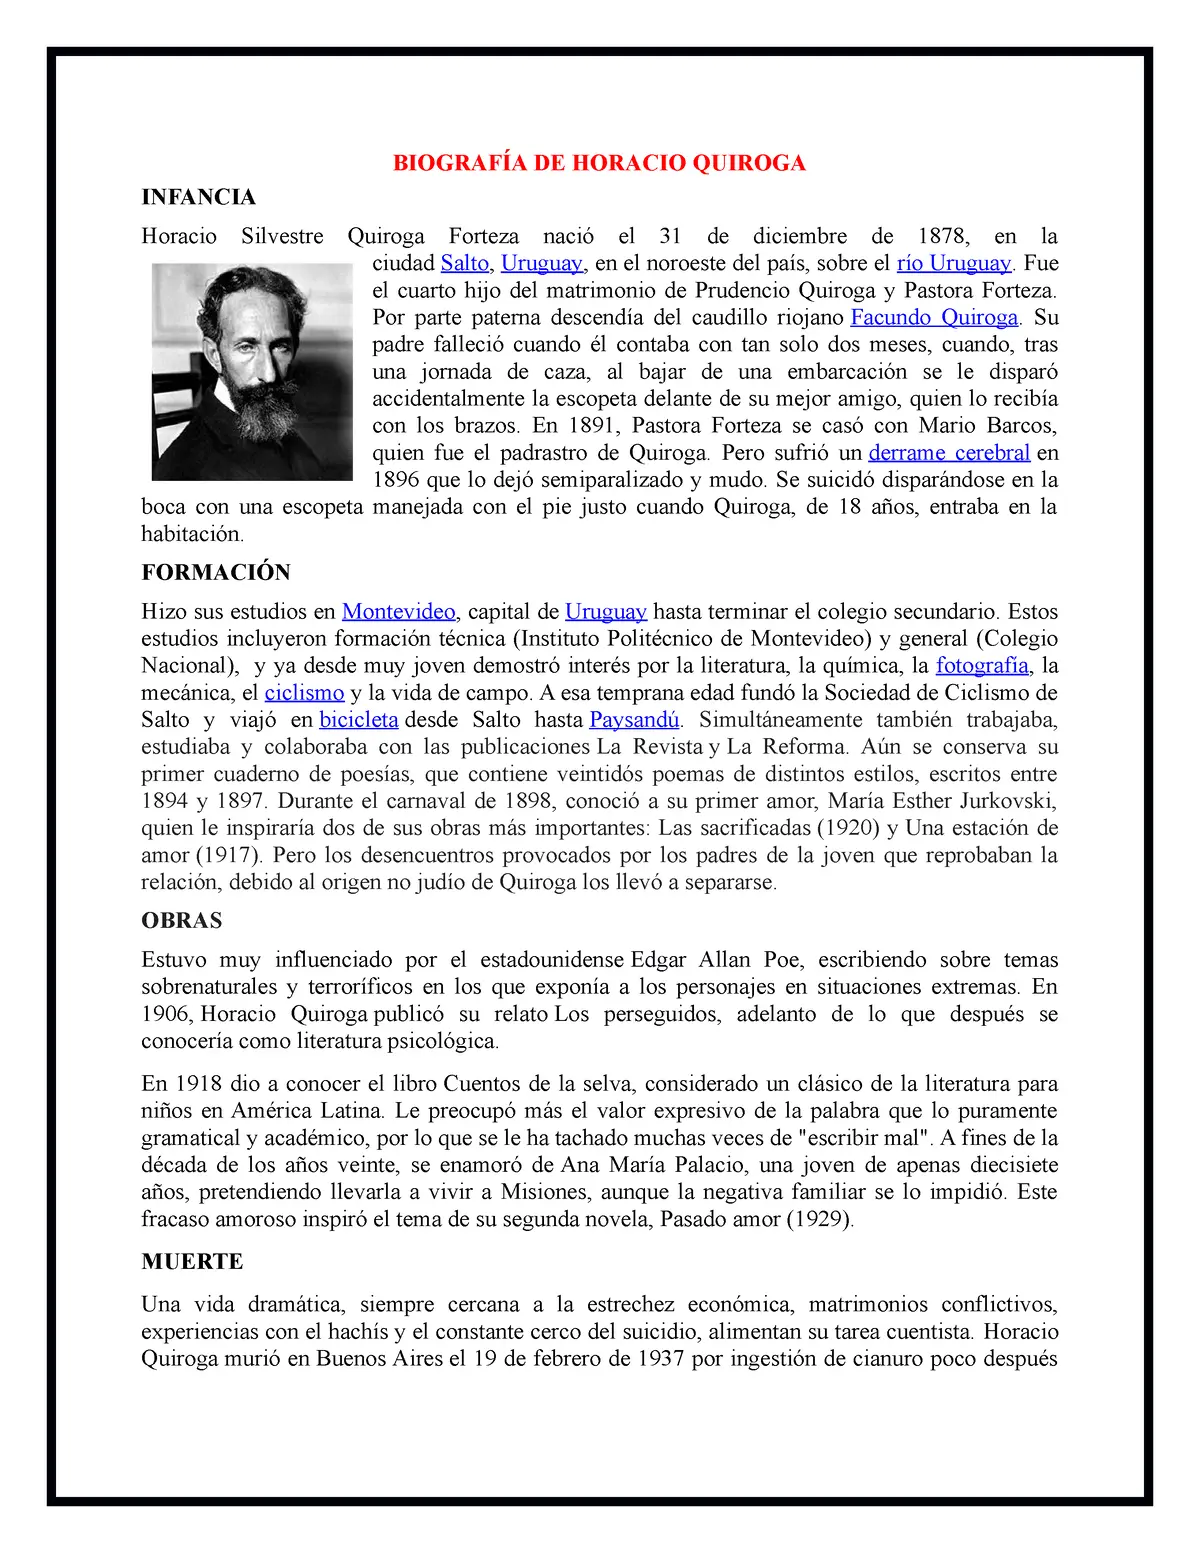 bibliografía de horacio quiroga resumen - Cuáles son las obras más importantes de Horacio Quiroga